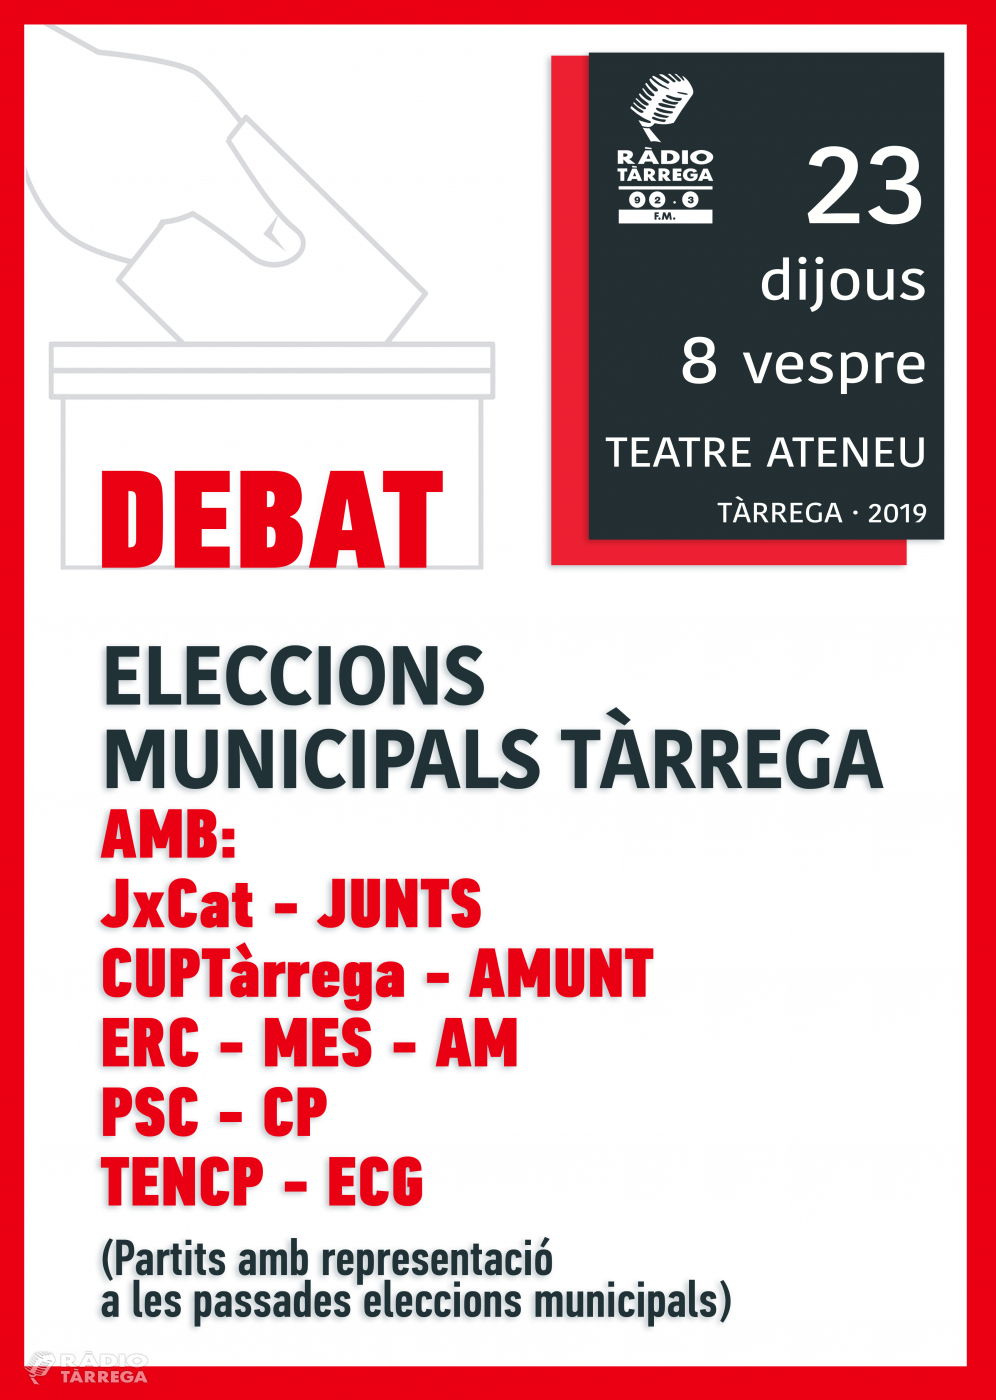 Ràdio Tàrrega organitza aquest proper dijous el debat de les eleccions municipals 2019 al Teatre Ateneu